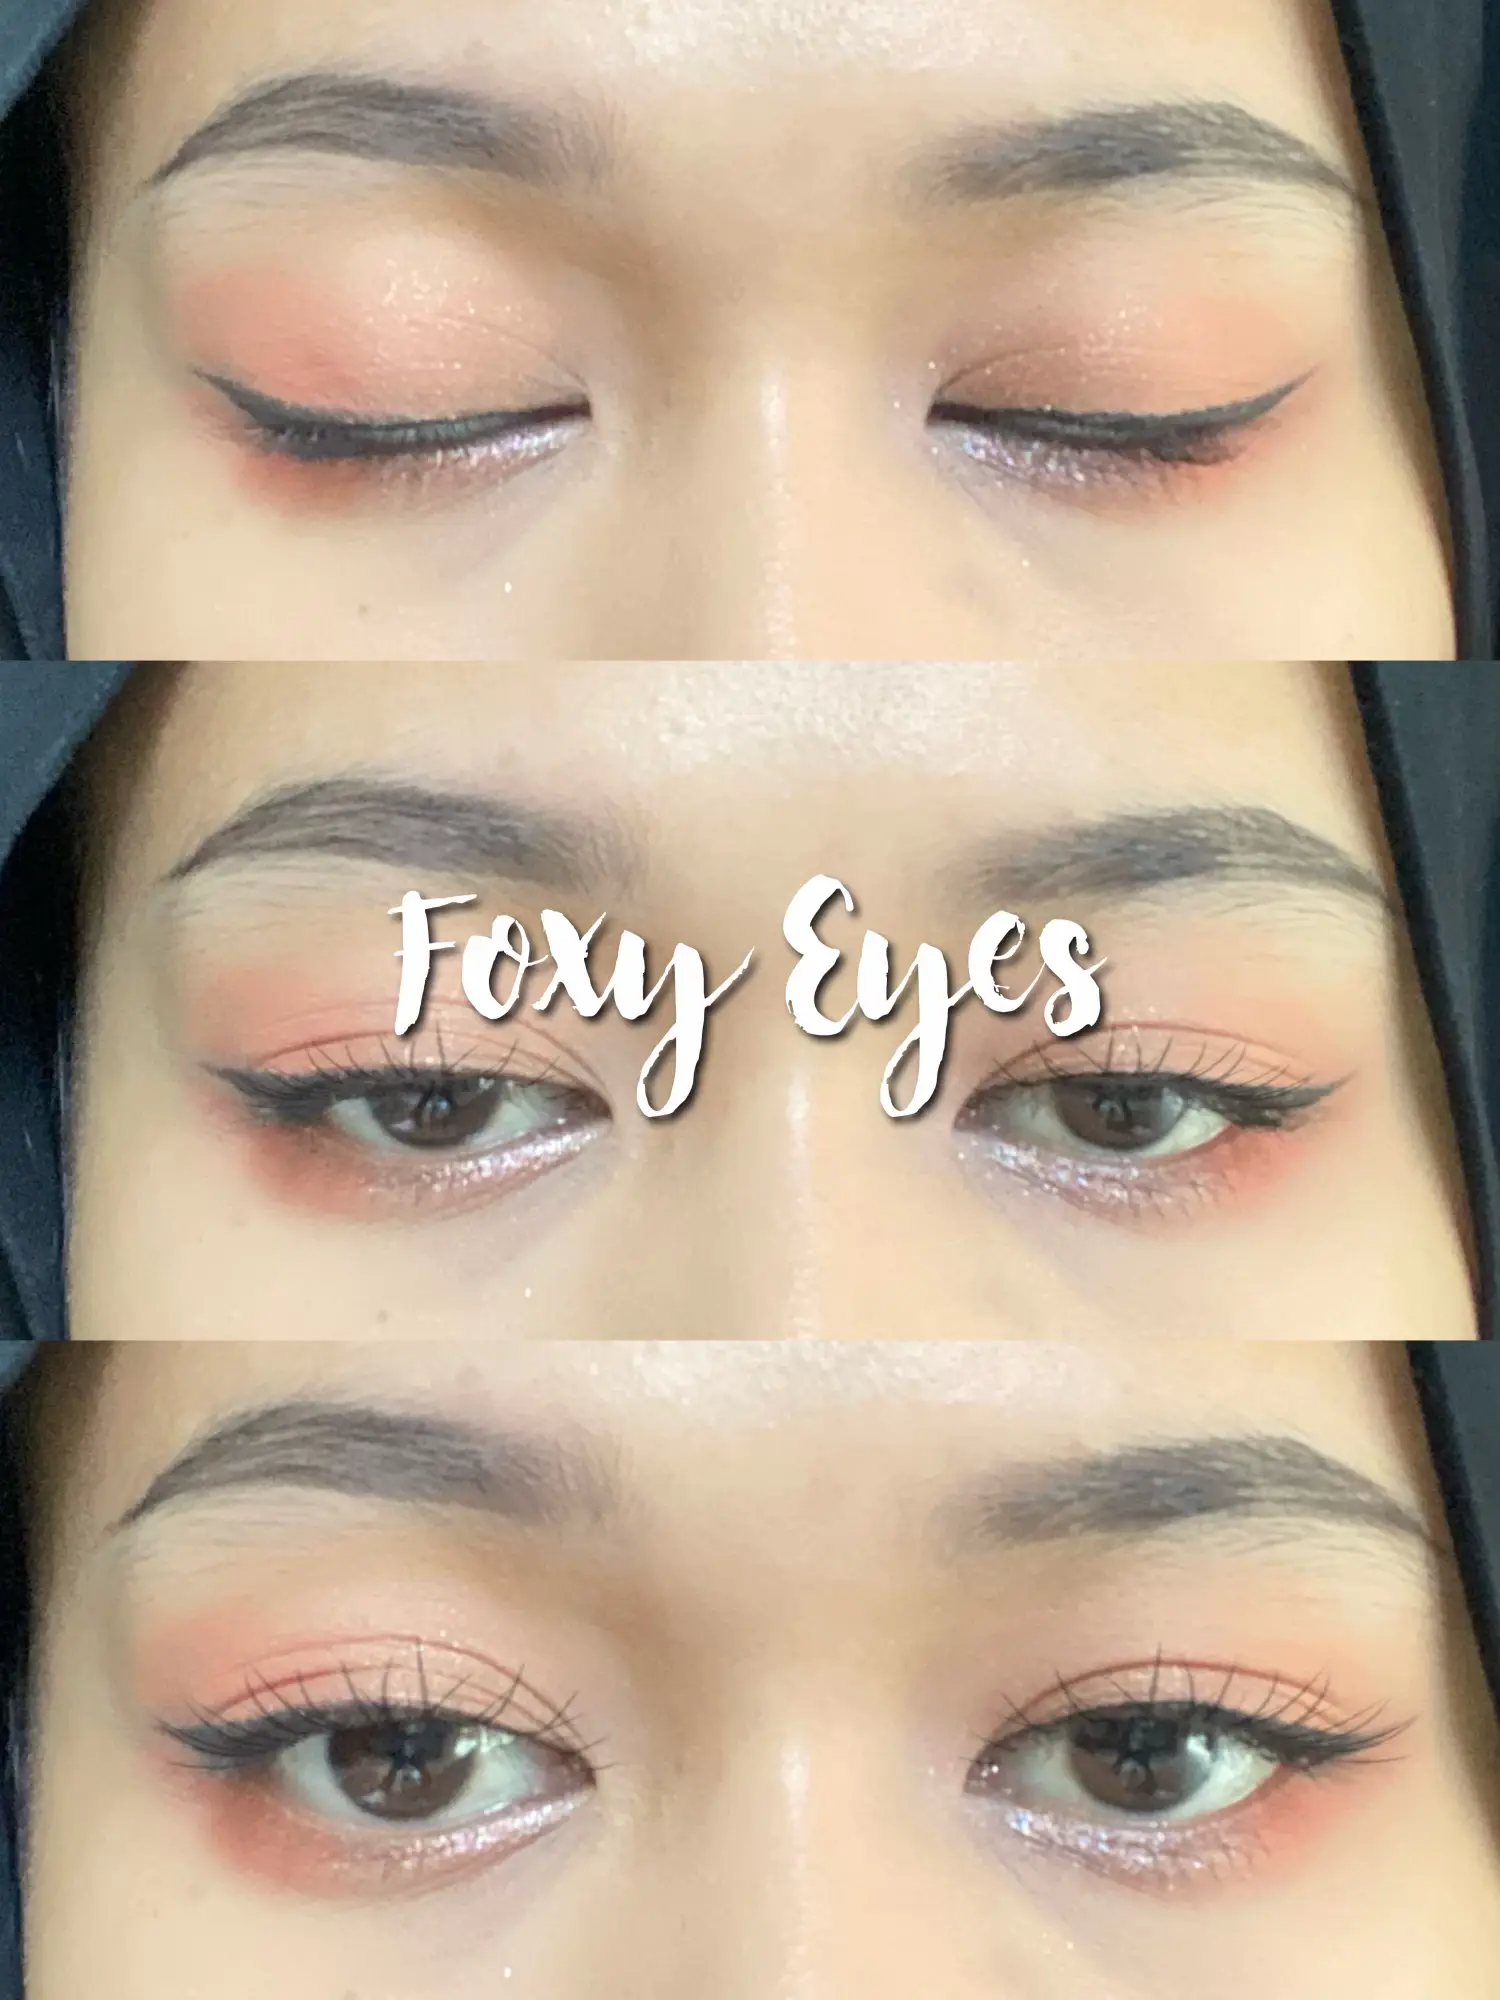 FOXY Eye Makeup Tutorial using White Eyeliner 